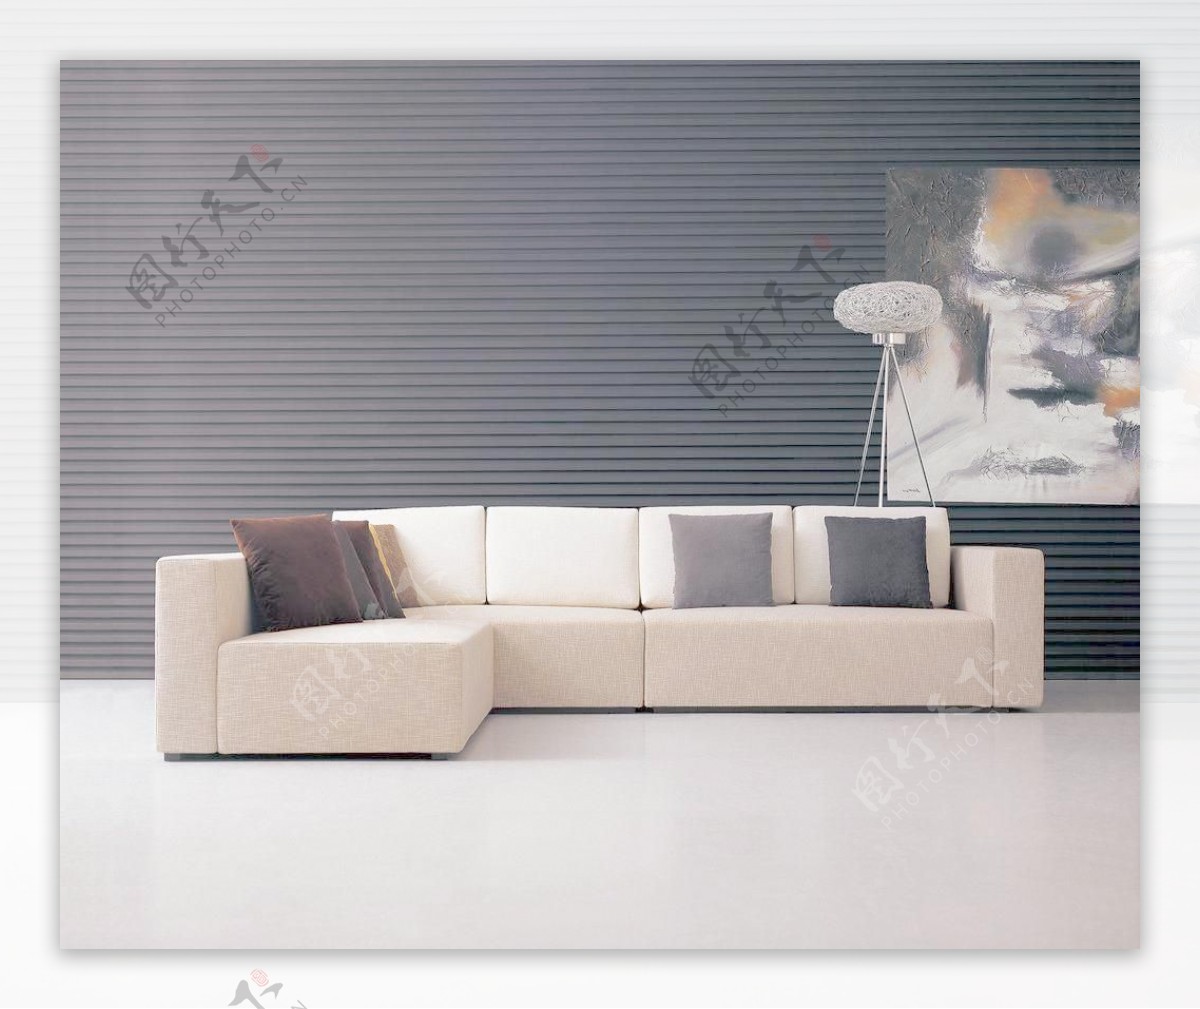 现代沙发室内设计图片